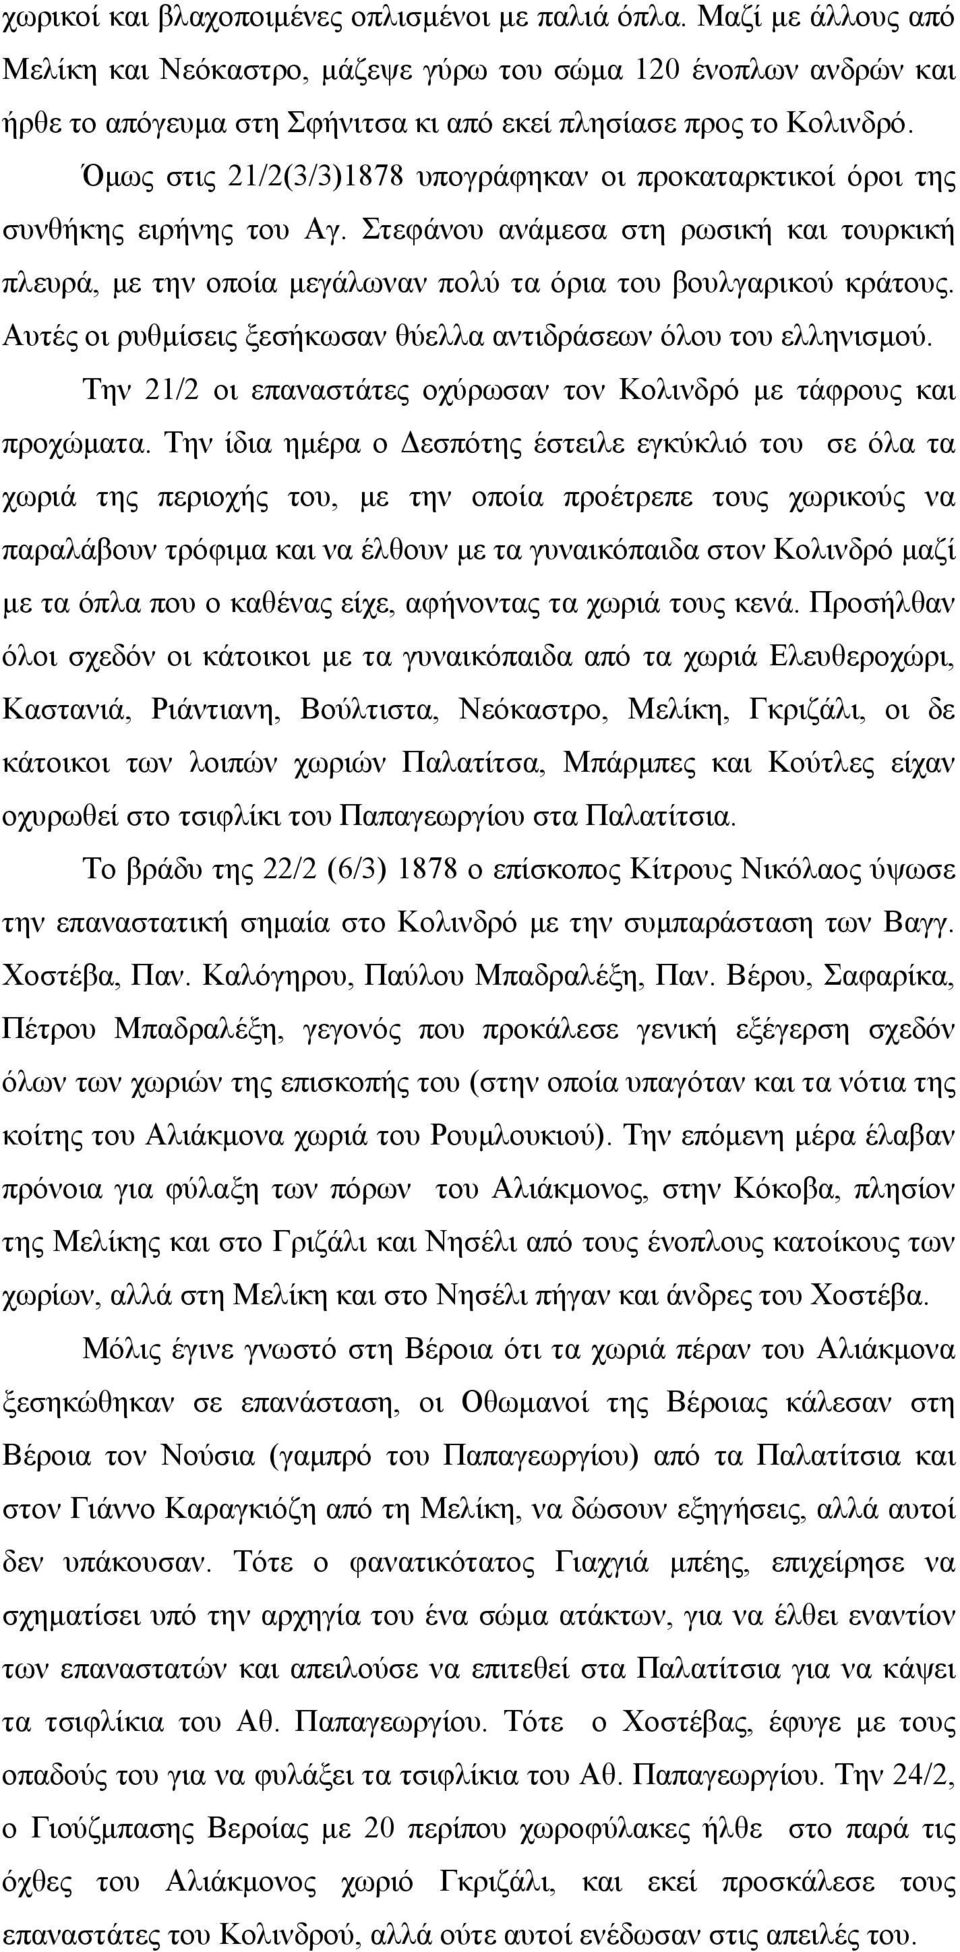 Όμως στις 21/2(3/3)1878 υπογράφηκαν οι προκαταρκτικοί όροι της συνθήκης ειρήνης του Αγ. Στεφάνου ανάμεσα στη ρωσική και τουρκική πλευρά, με την οποία μεγάλωναν πολύ τα όρια του βουλγαρικού κράτους.